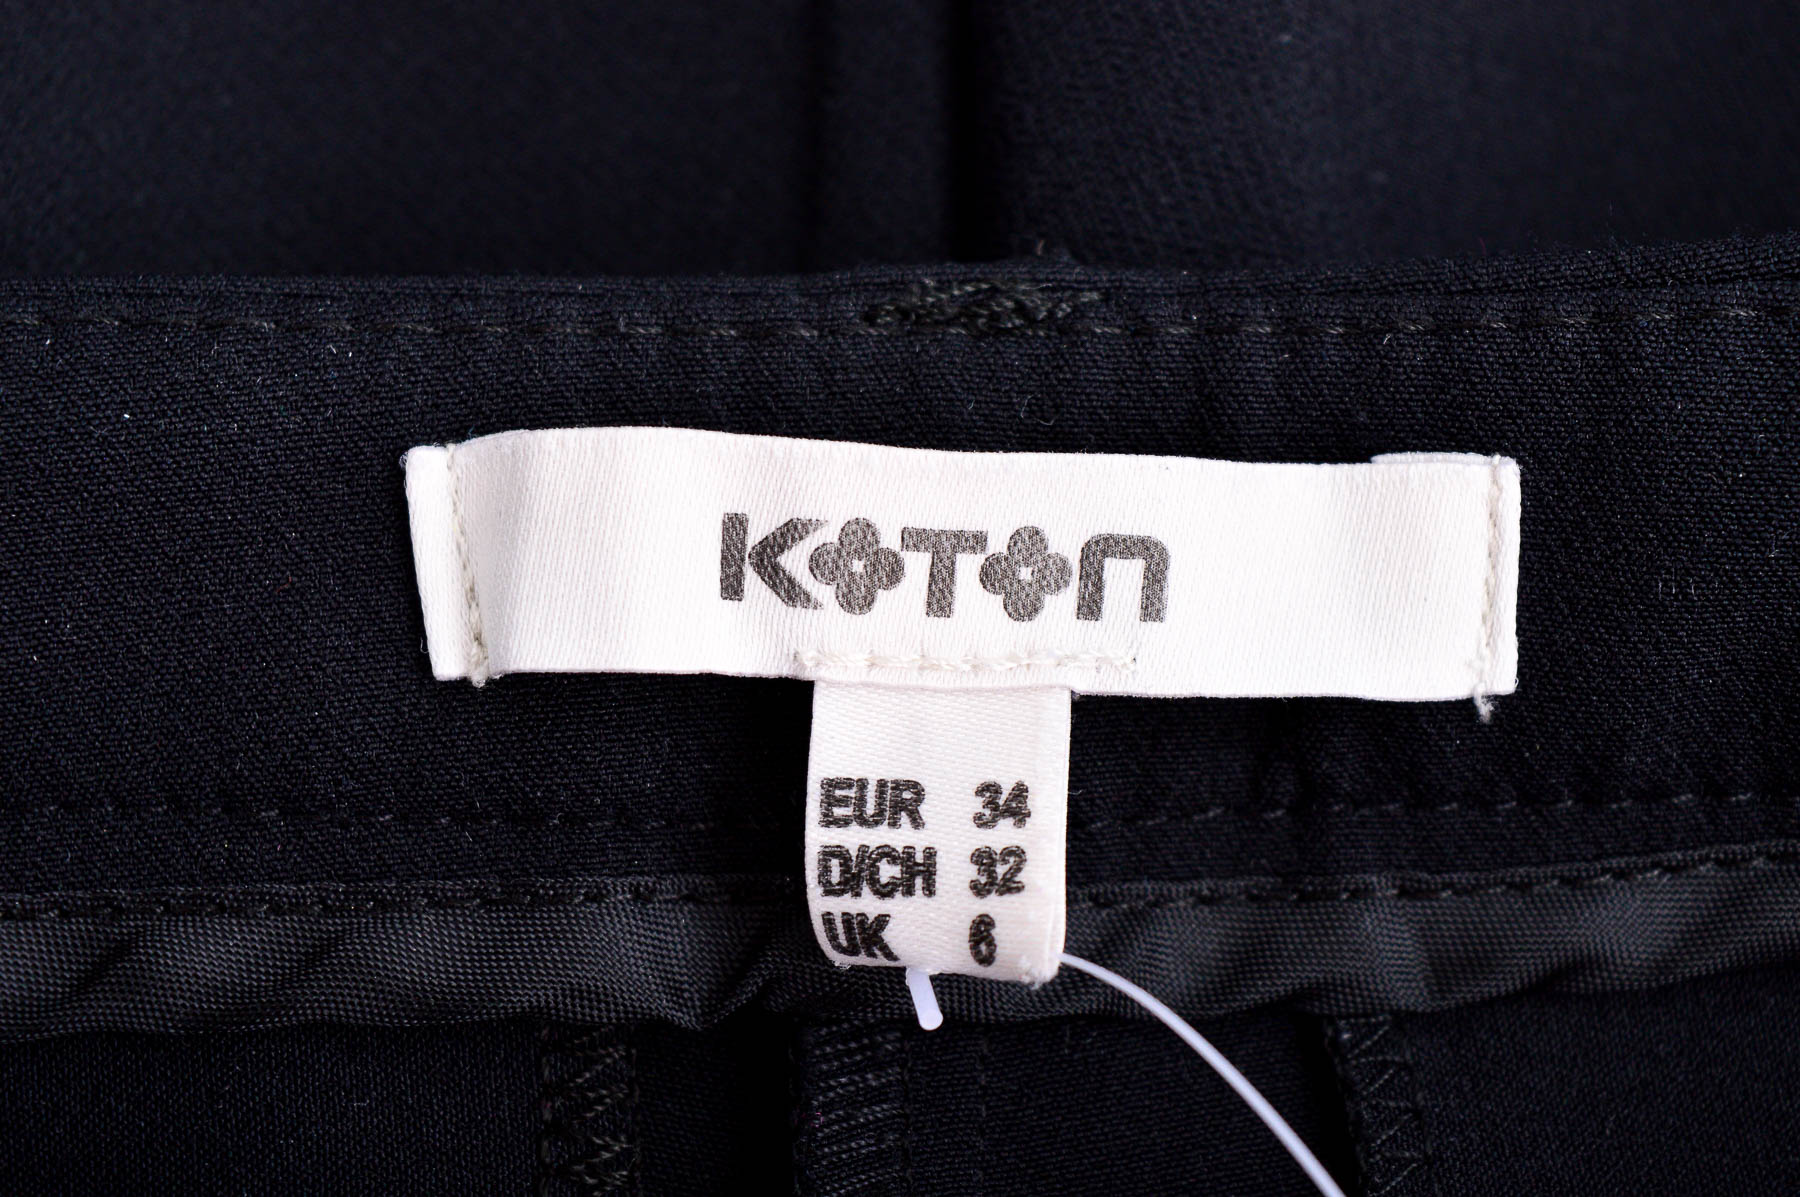 Women's trousers - Koton - 2